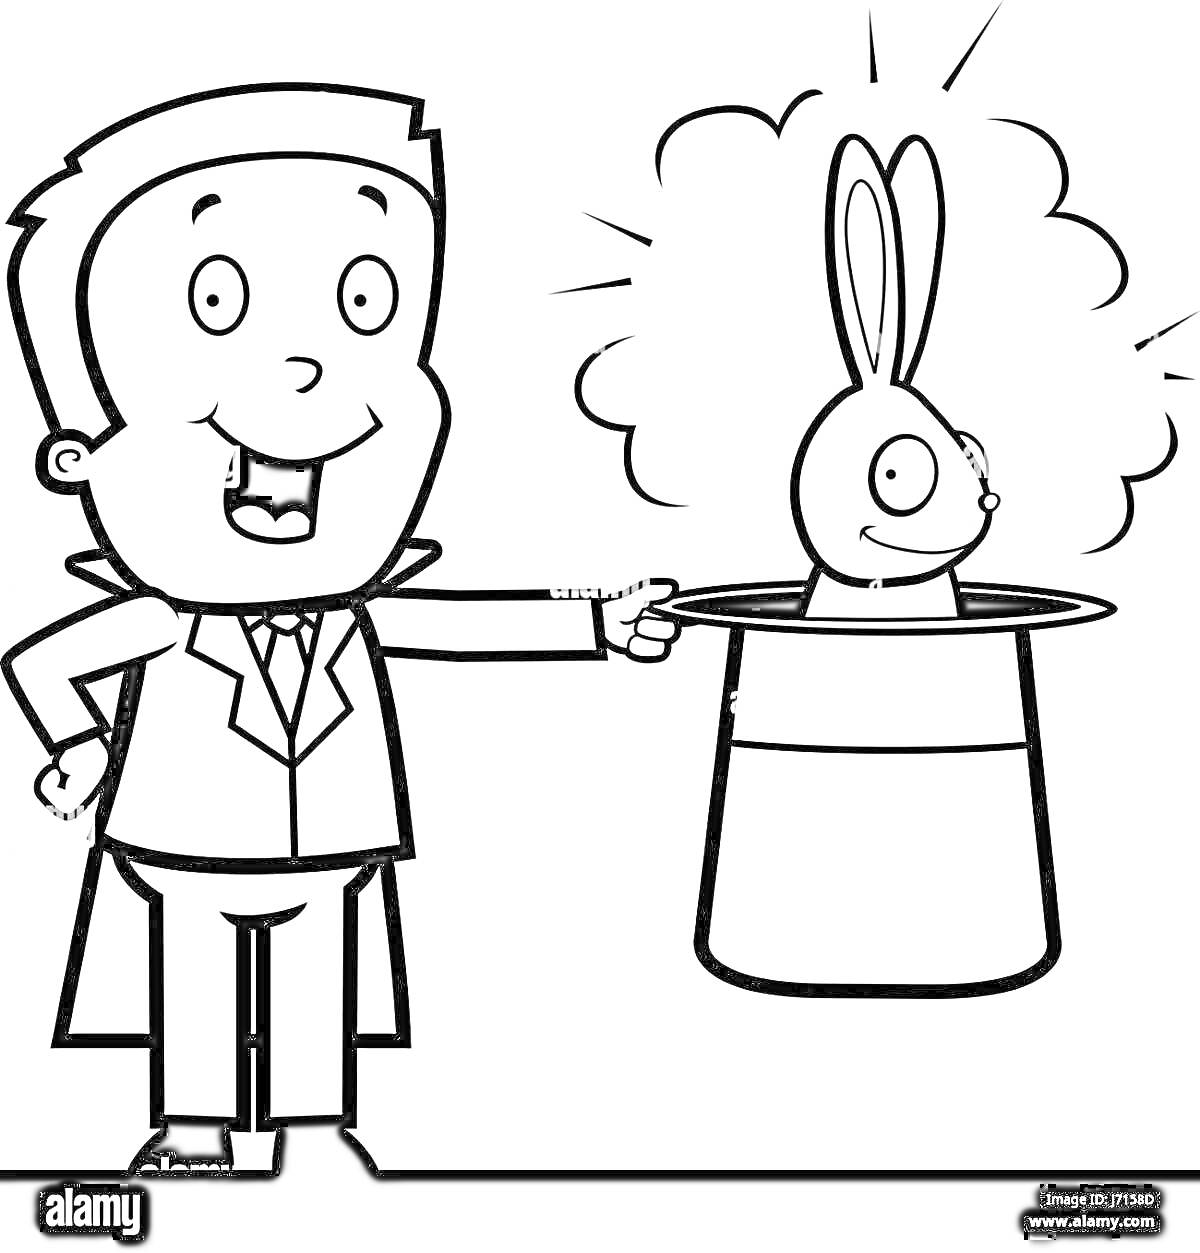 Илллюстратор в костюме фокусника показывает кролика, которого достали из цилиндра.